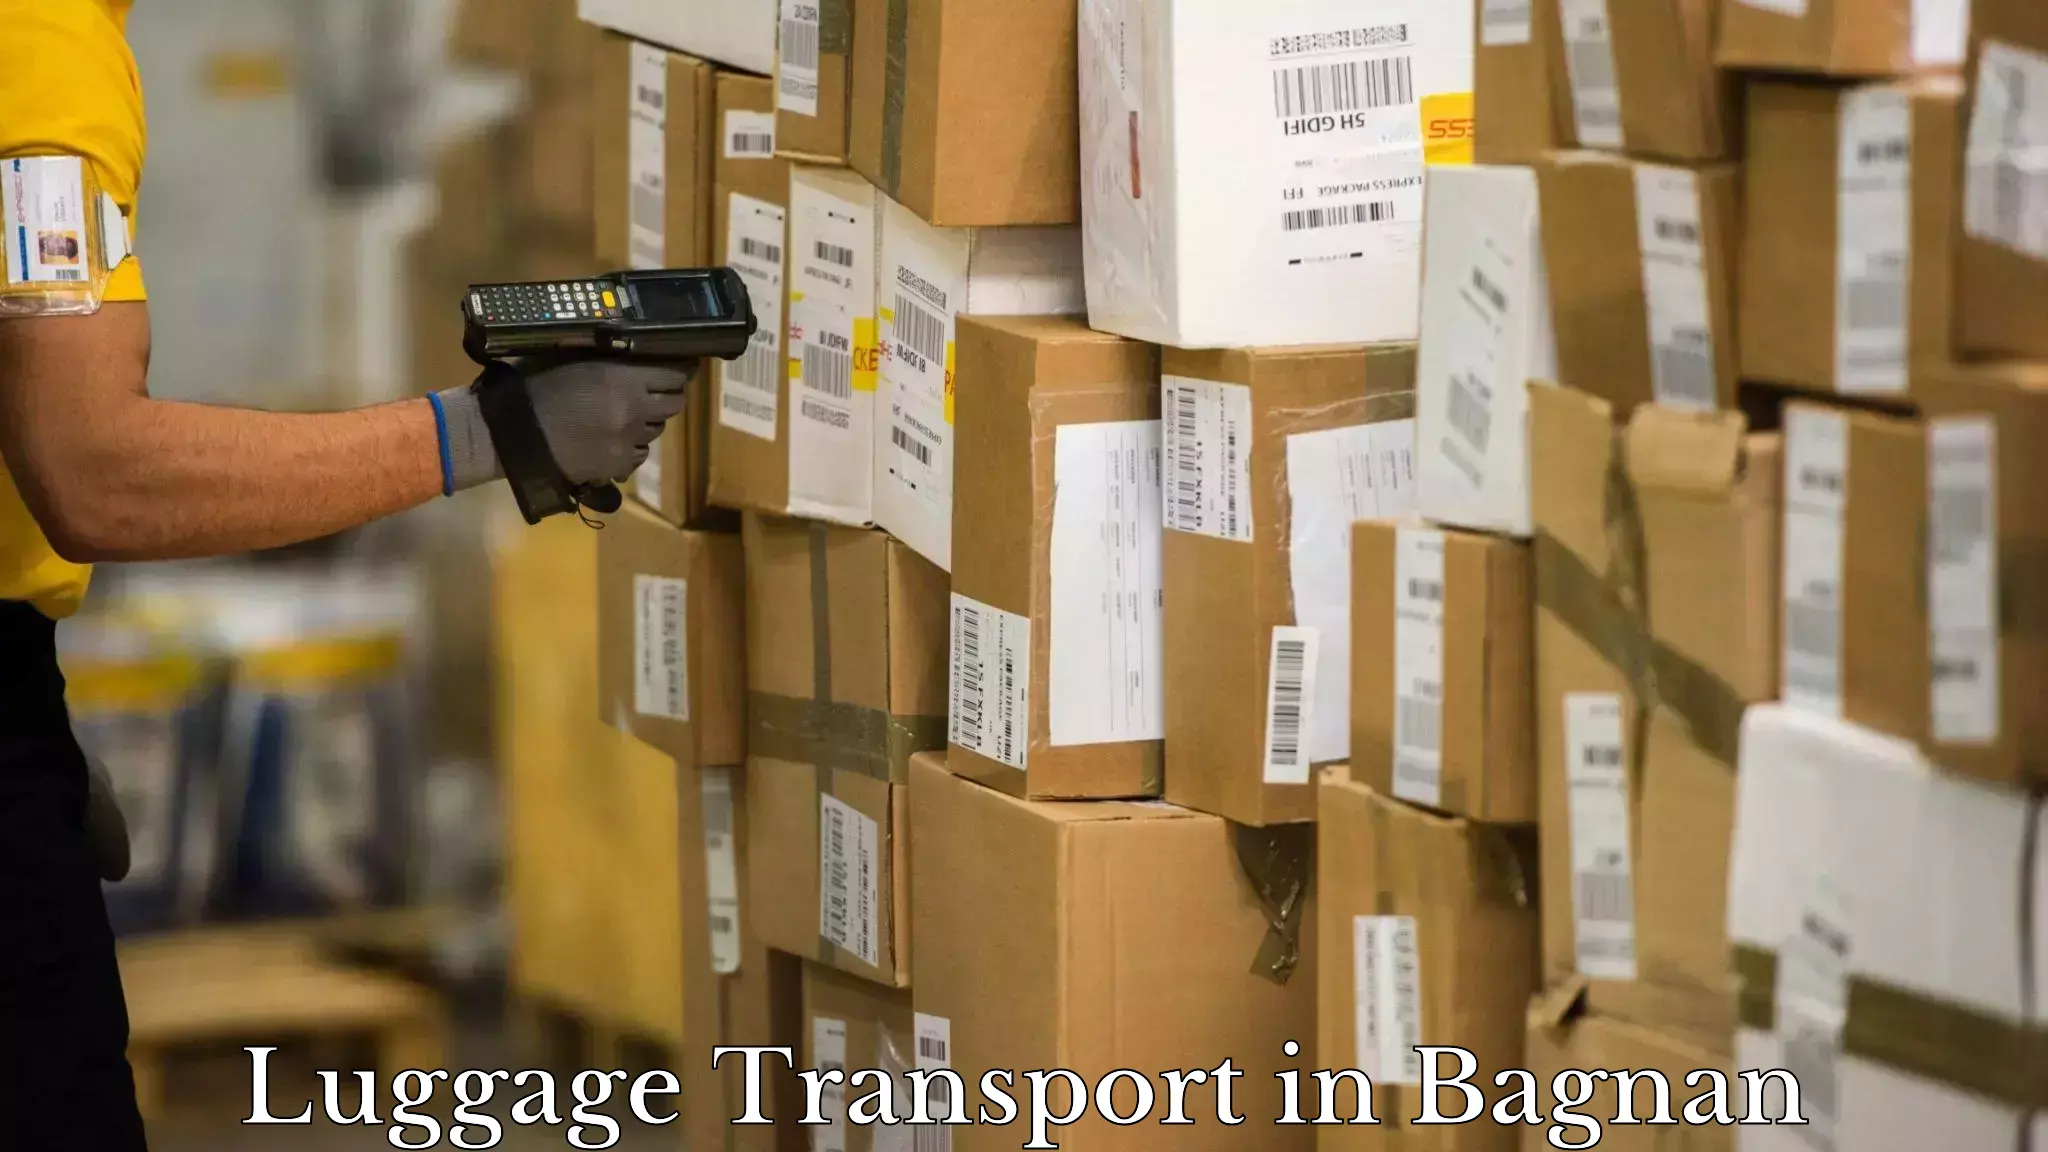 Door to hotel baggage transport in Bagnan